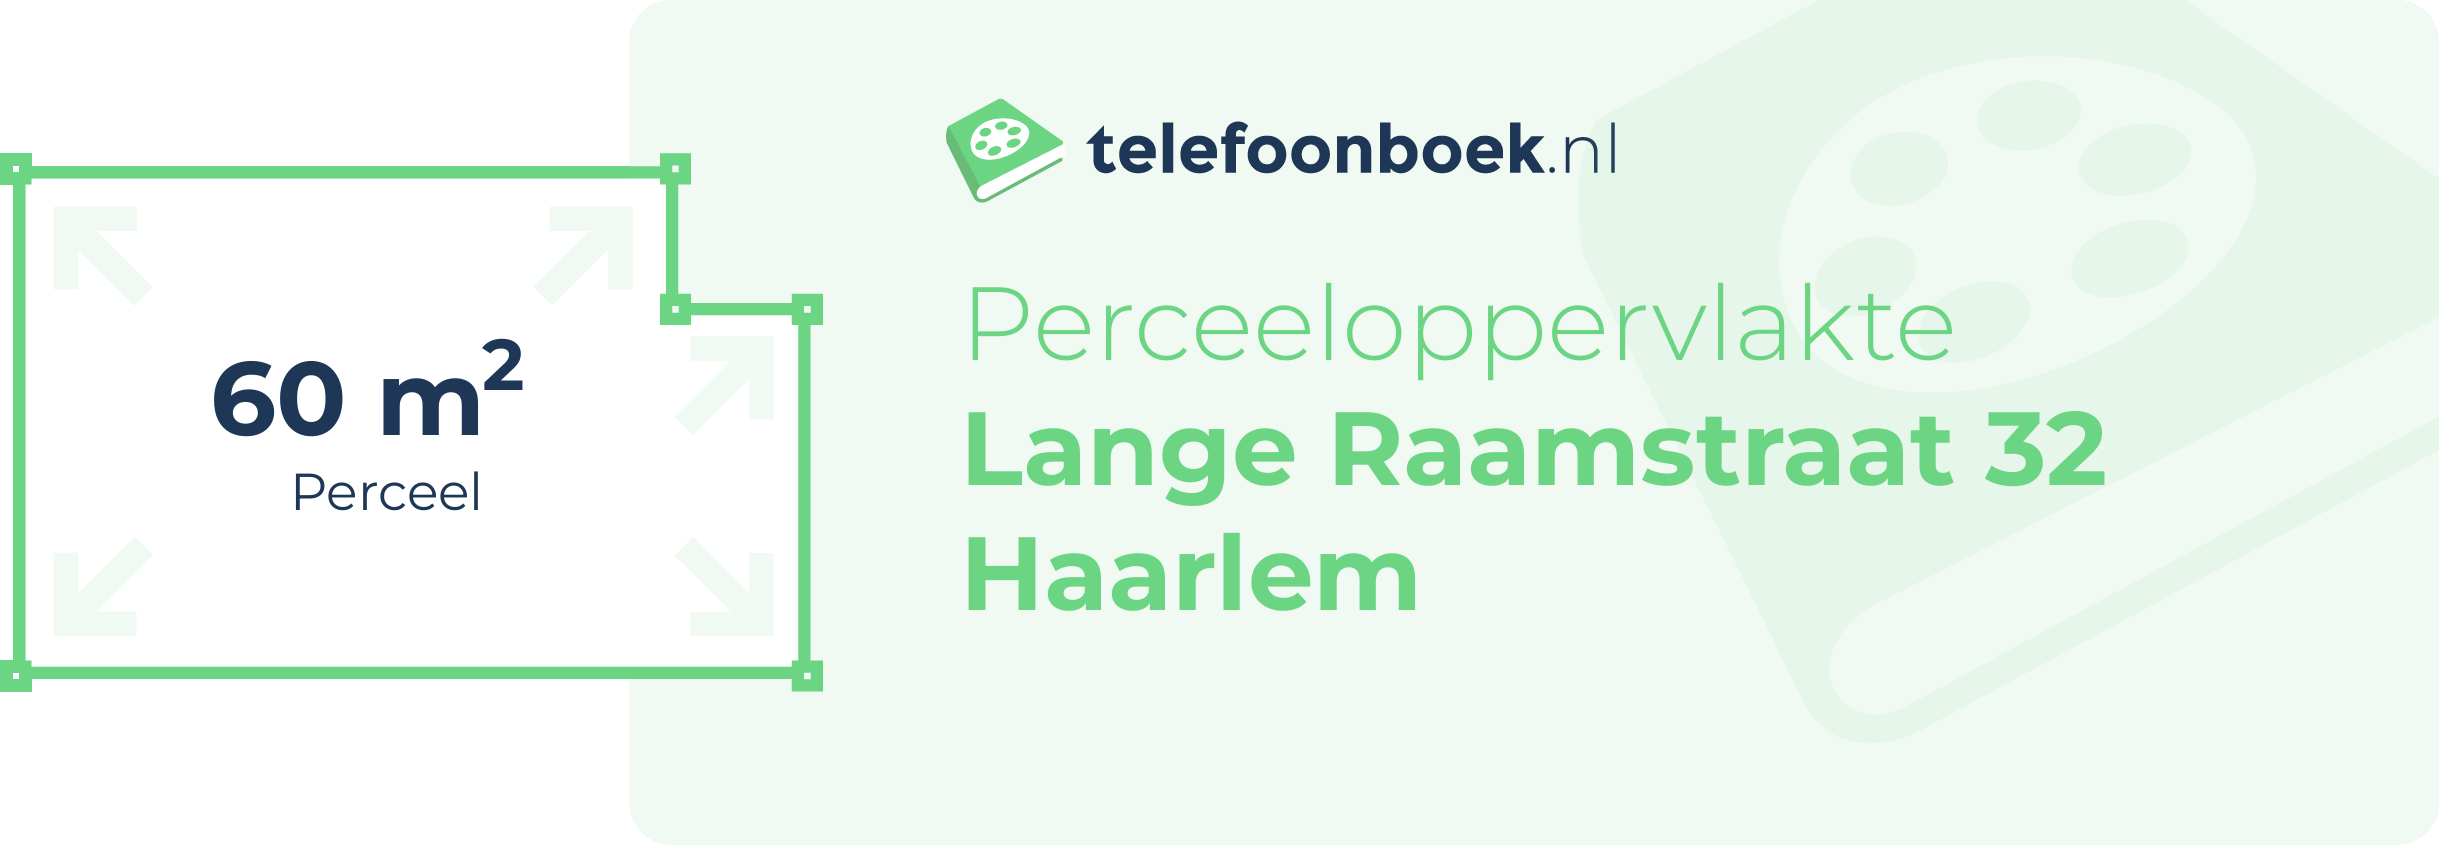 Perceeloppervlakte Lange Raamstraat 32 Haarlem